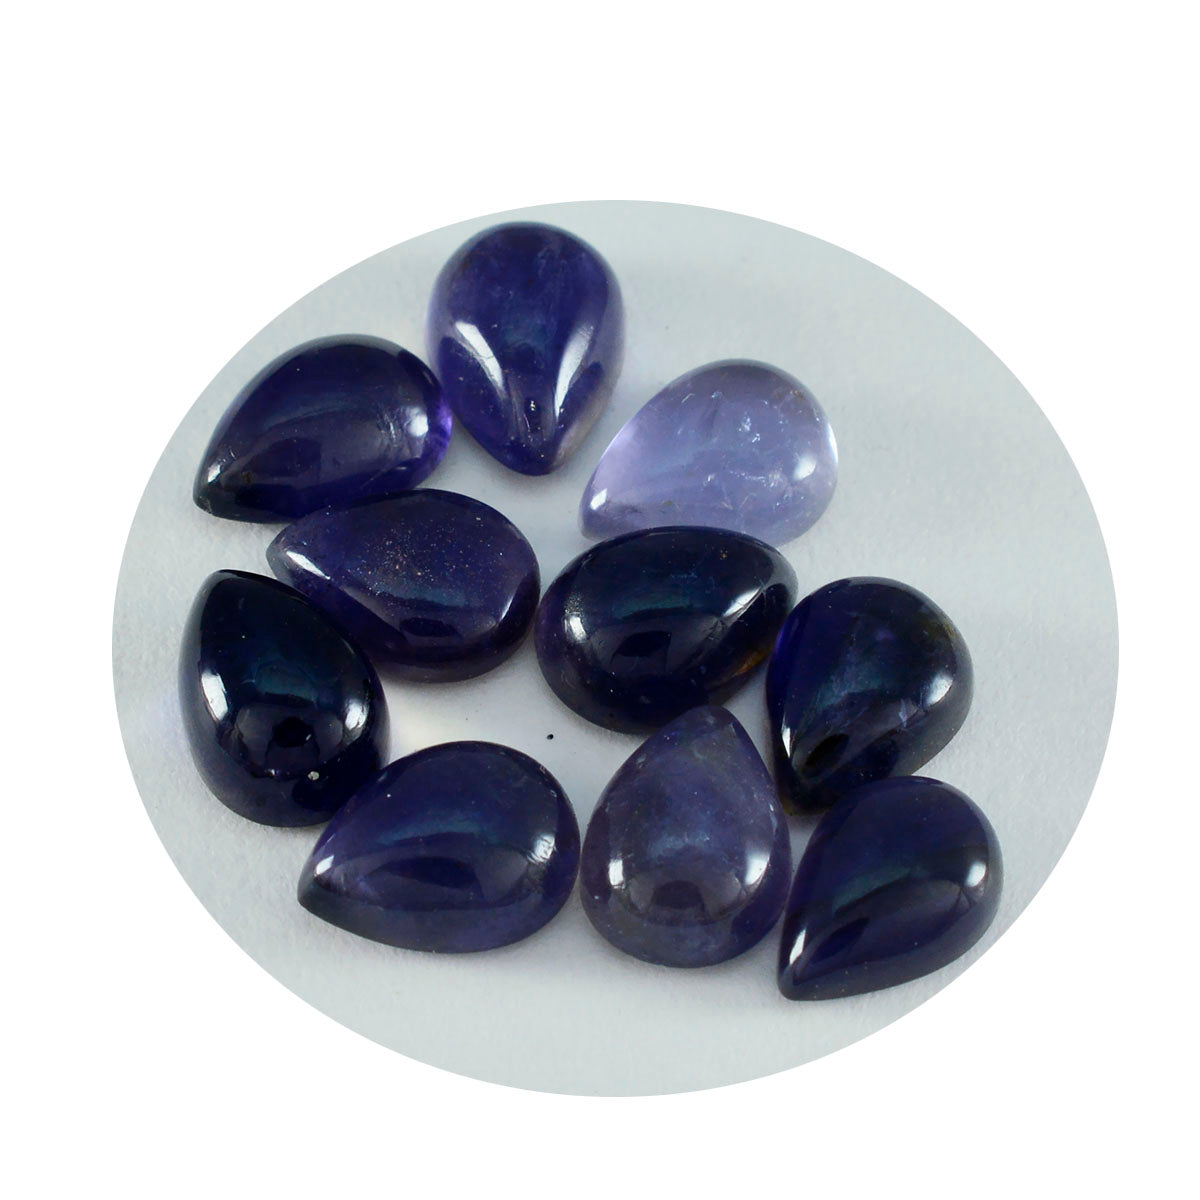 Riyogems 1PC blauwe ioliet cabochon 10x14 mm peervorm schoonheid kwaliteit losse steen